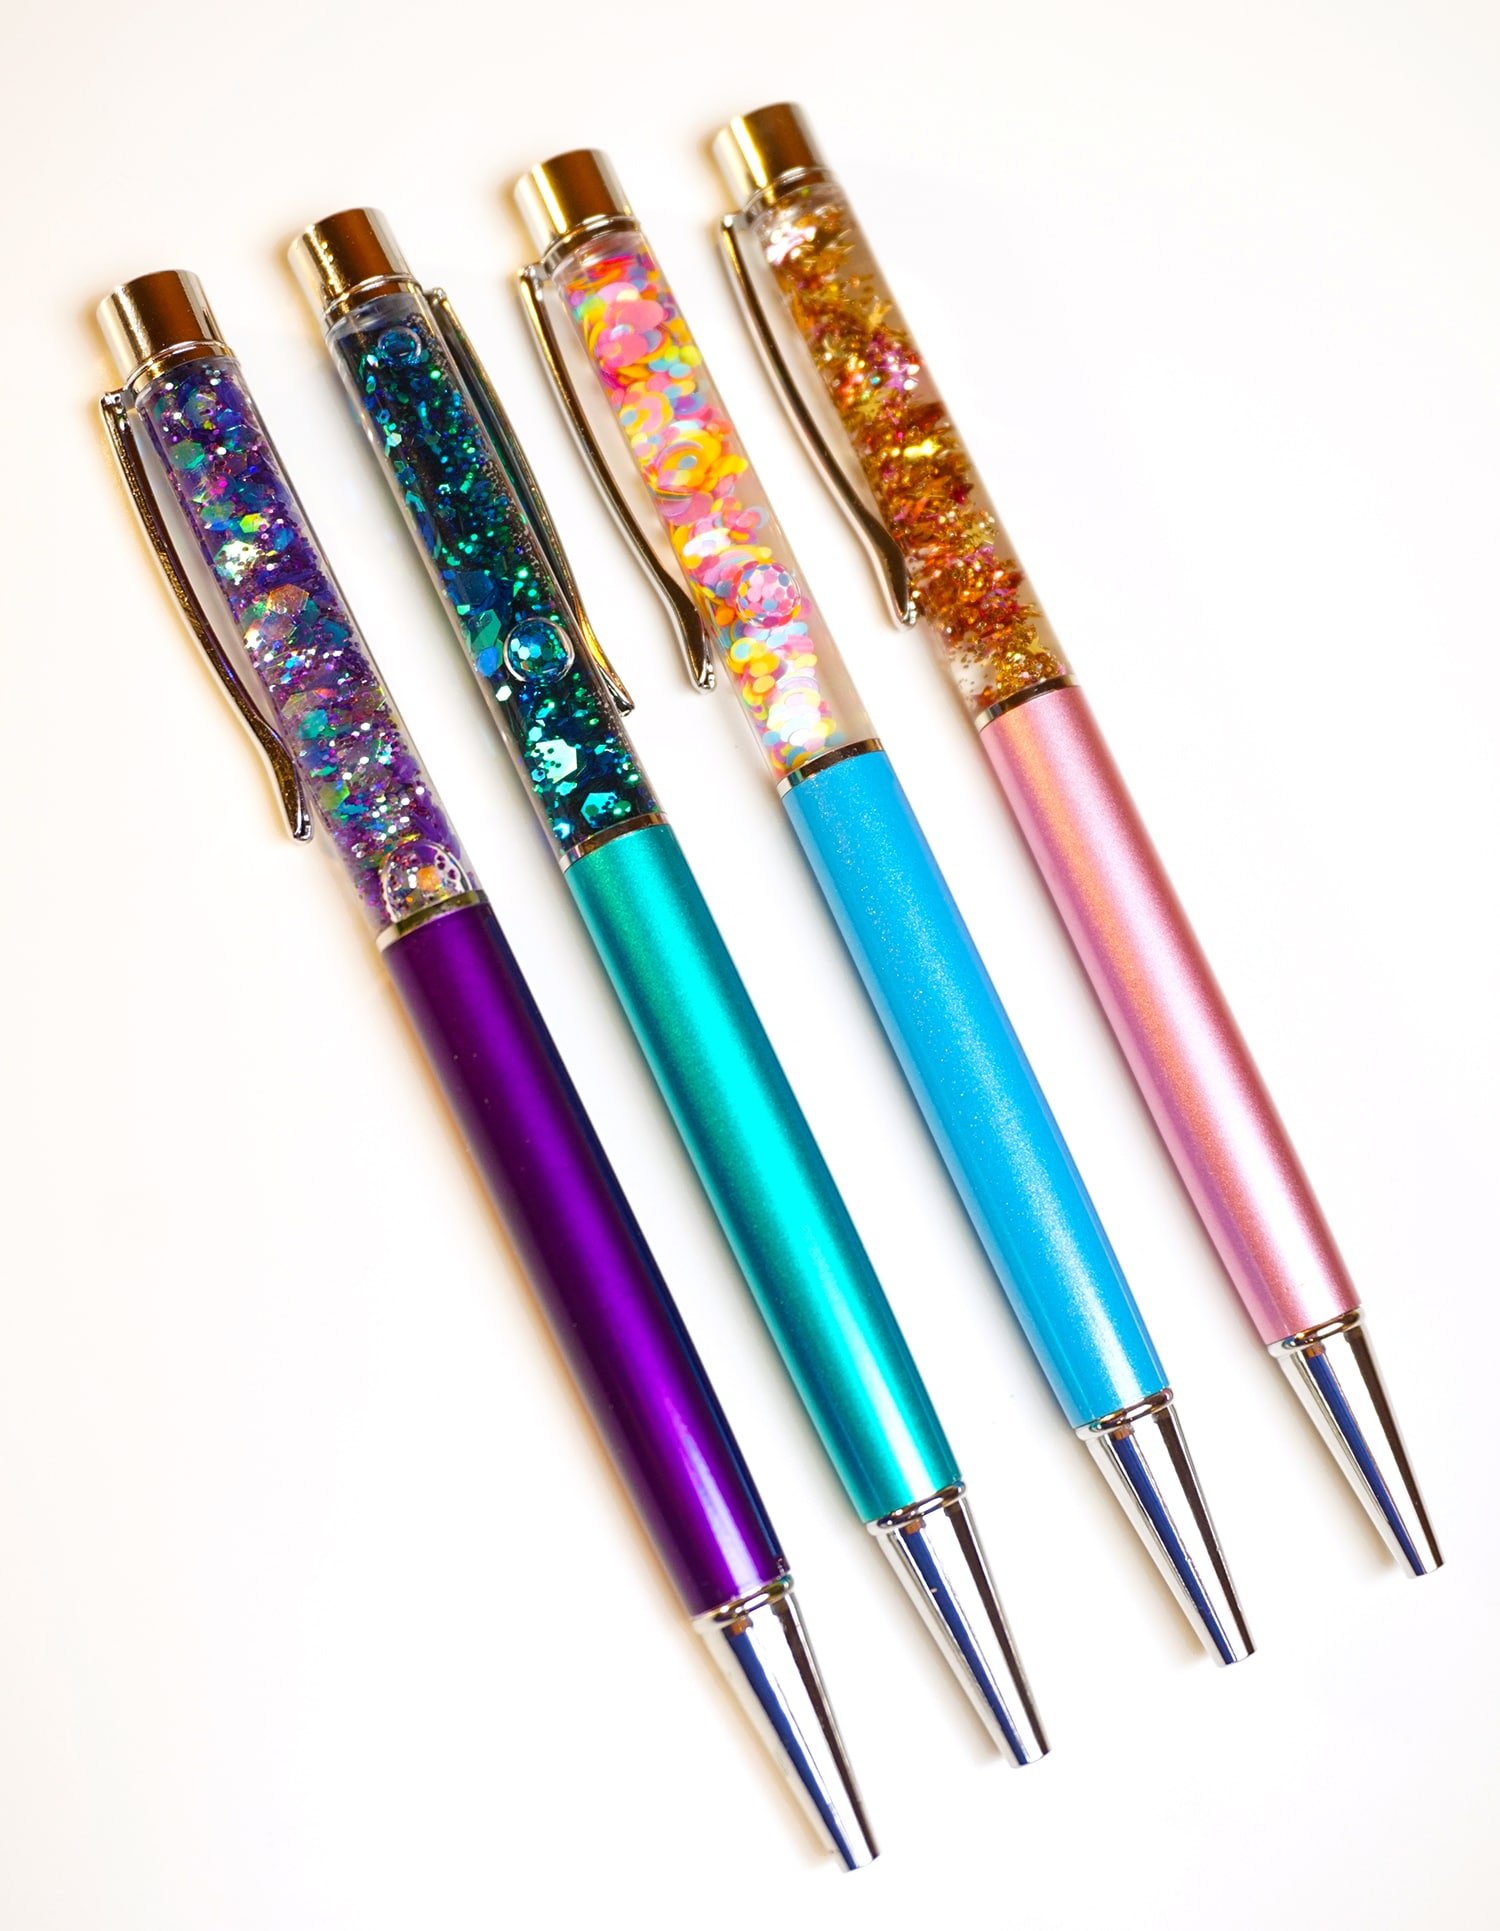 DIY glitter pens in various colors